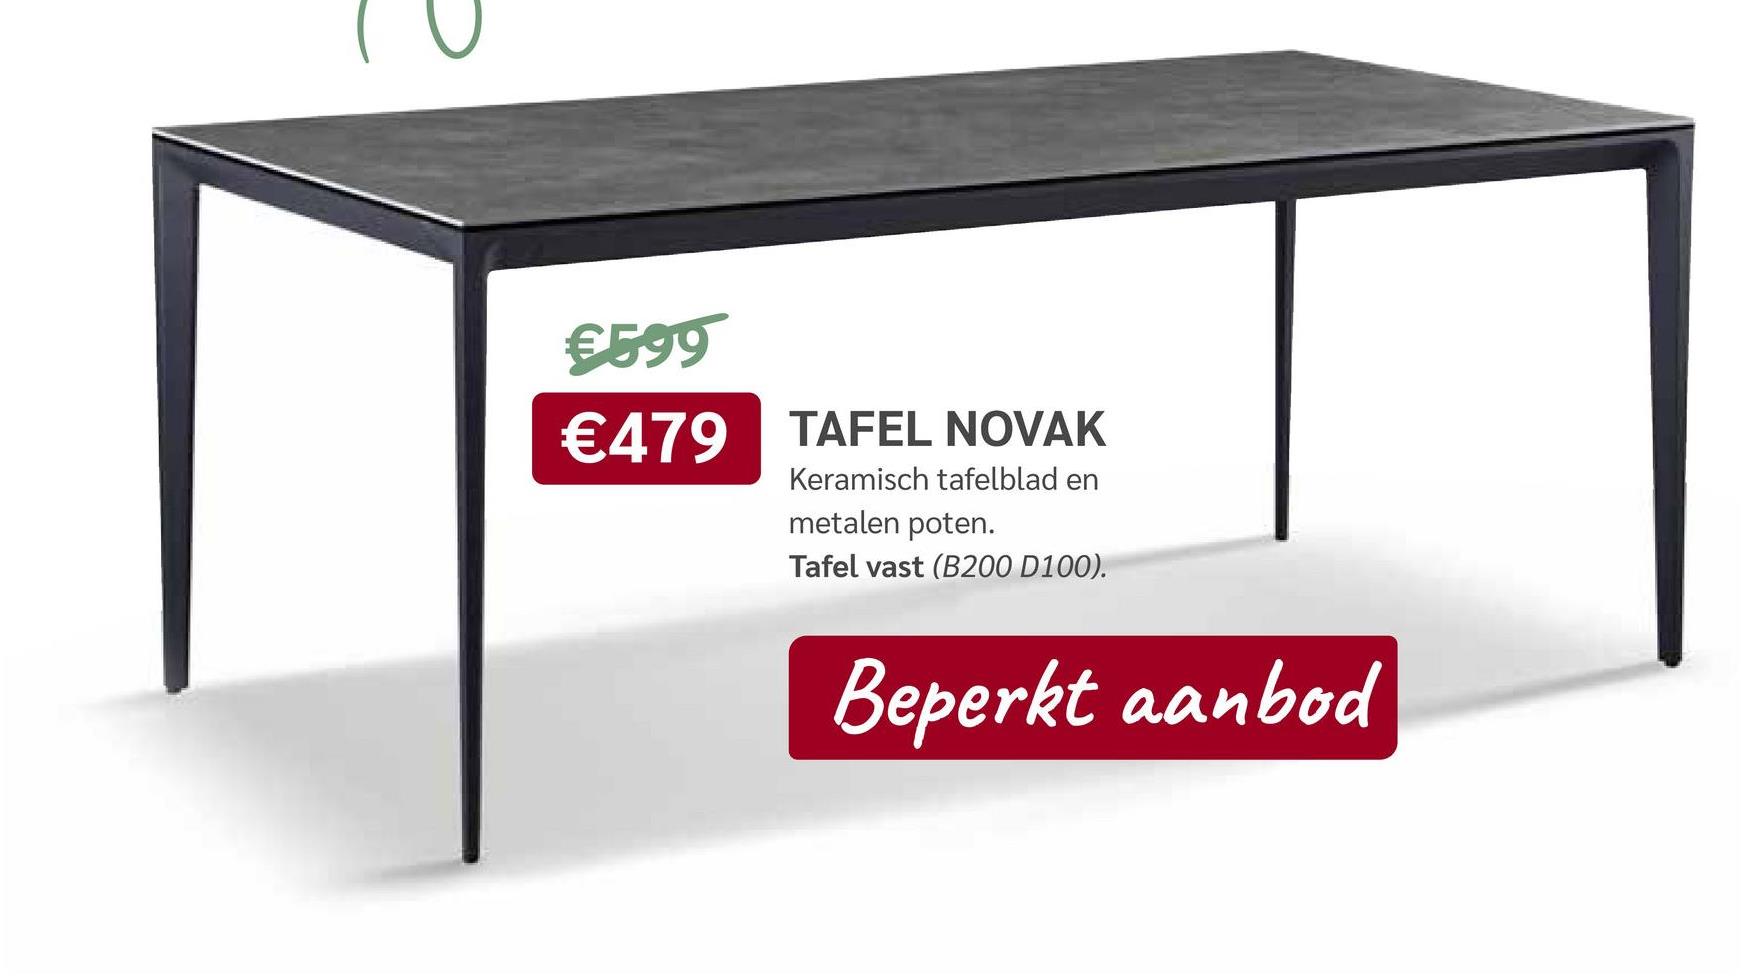 €599
€479 TAFEL NOVAK
Keramisch tafelblad en
metalen poten.
Tafel vast (B200 D100).
Beperkt aanbod